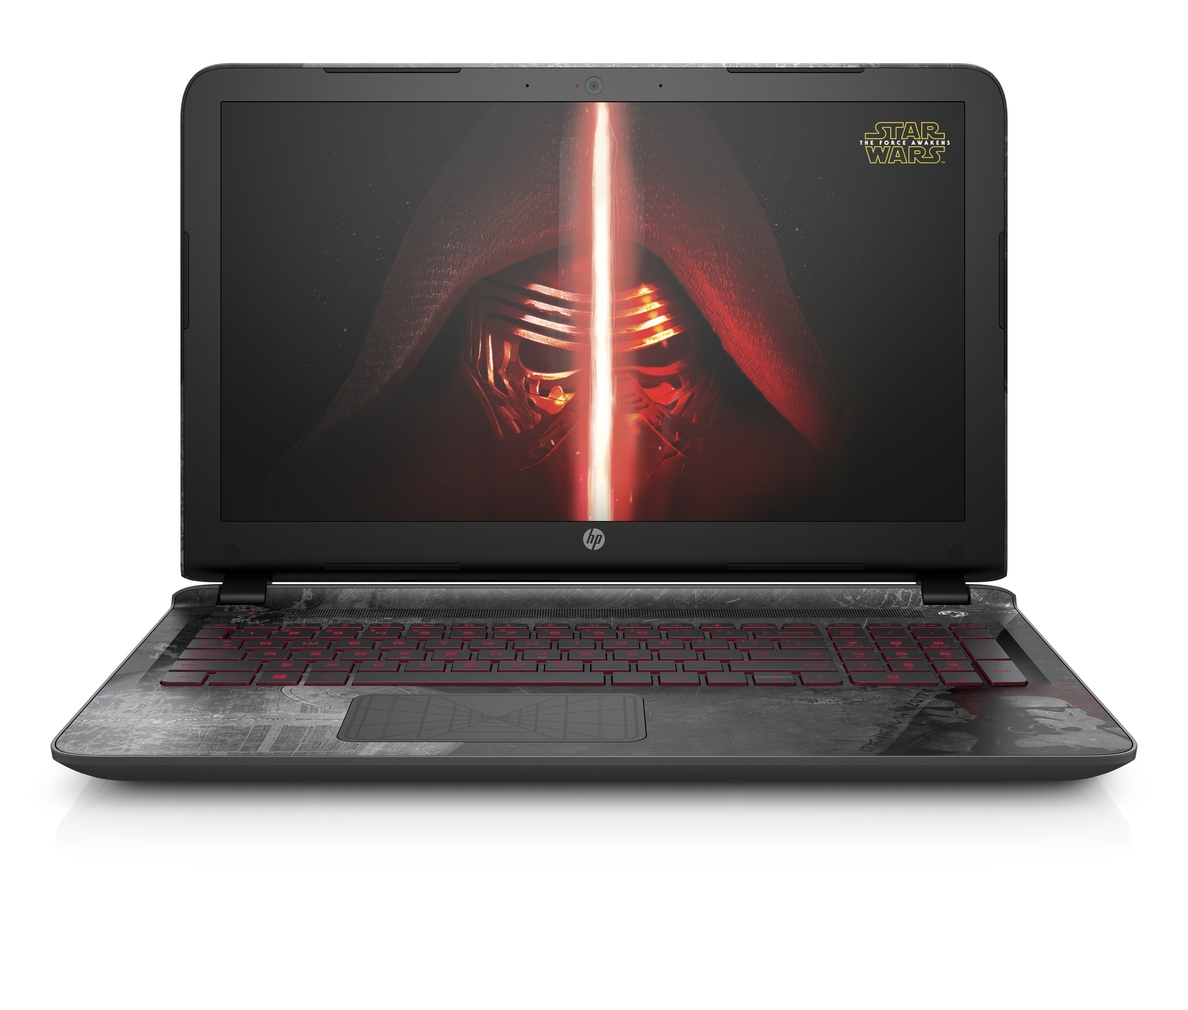 HP presenta su nuevo portátil inspirado en Star Wars